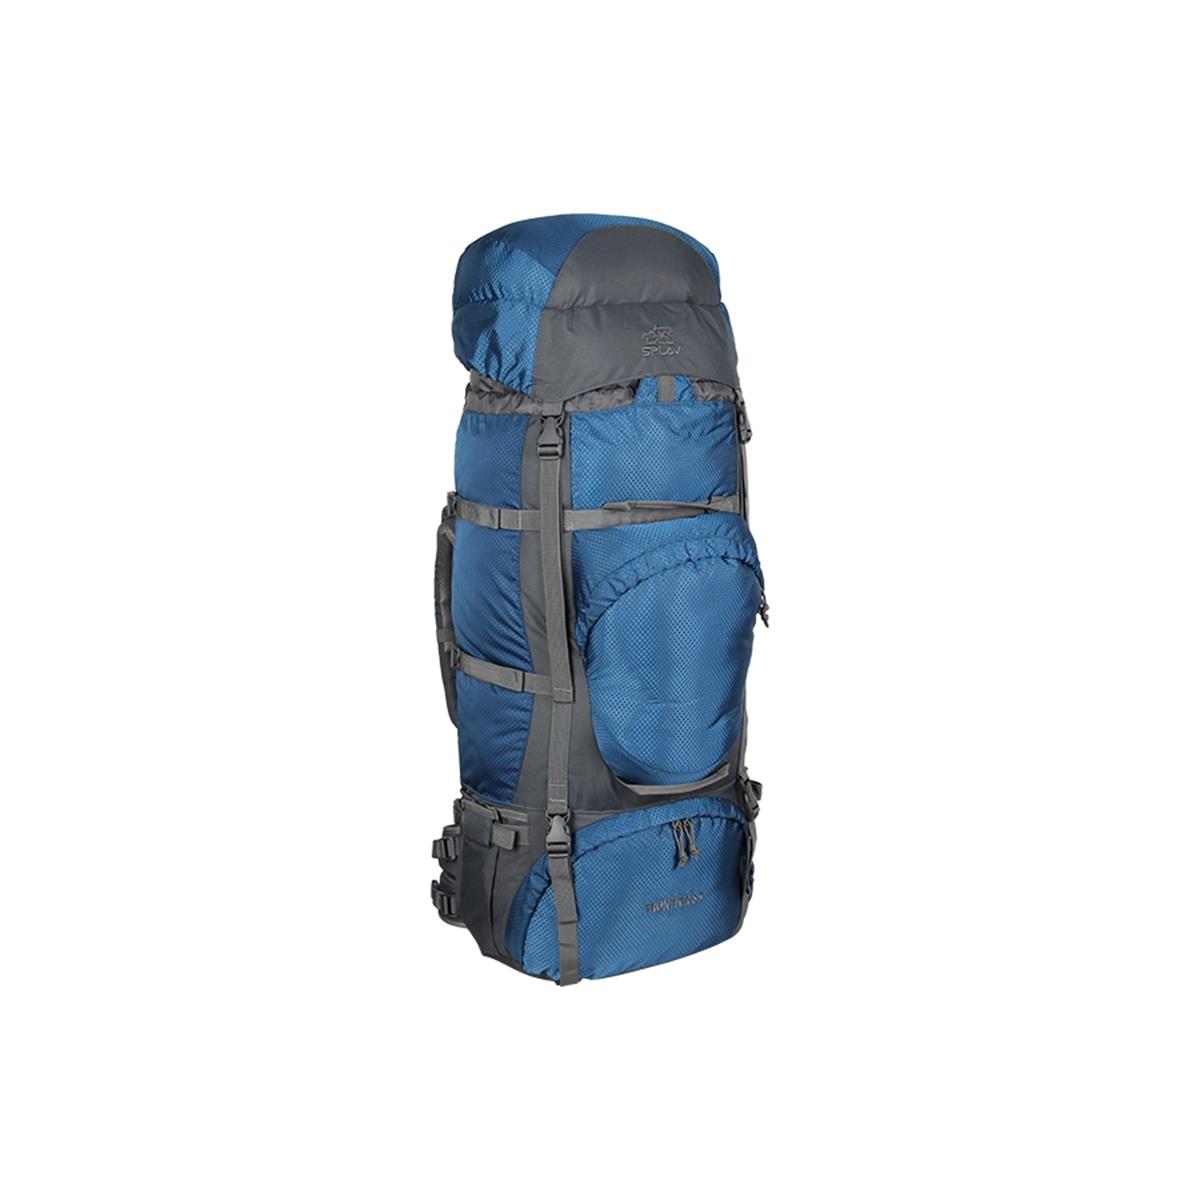 Рюкзак Frontier 85 СПЛАВ рюкзак отдел на молнии голубой пудра